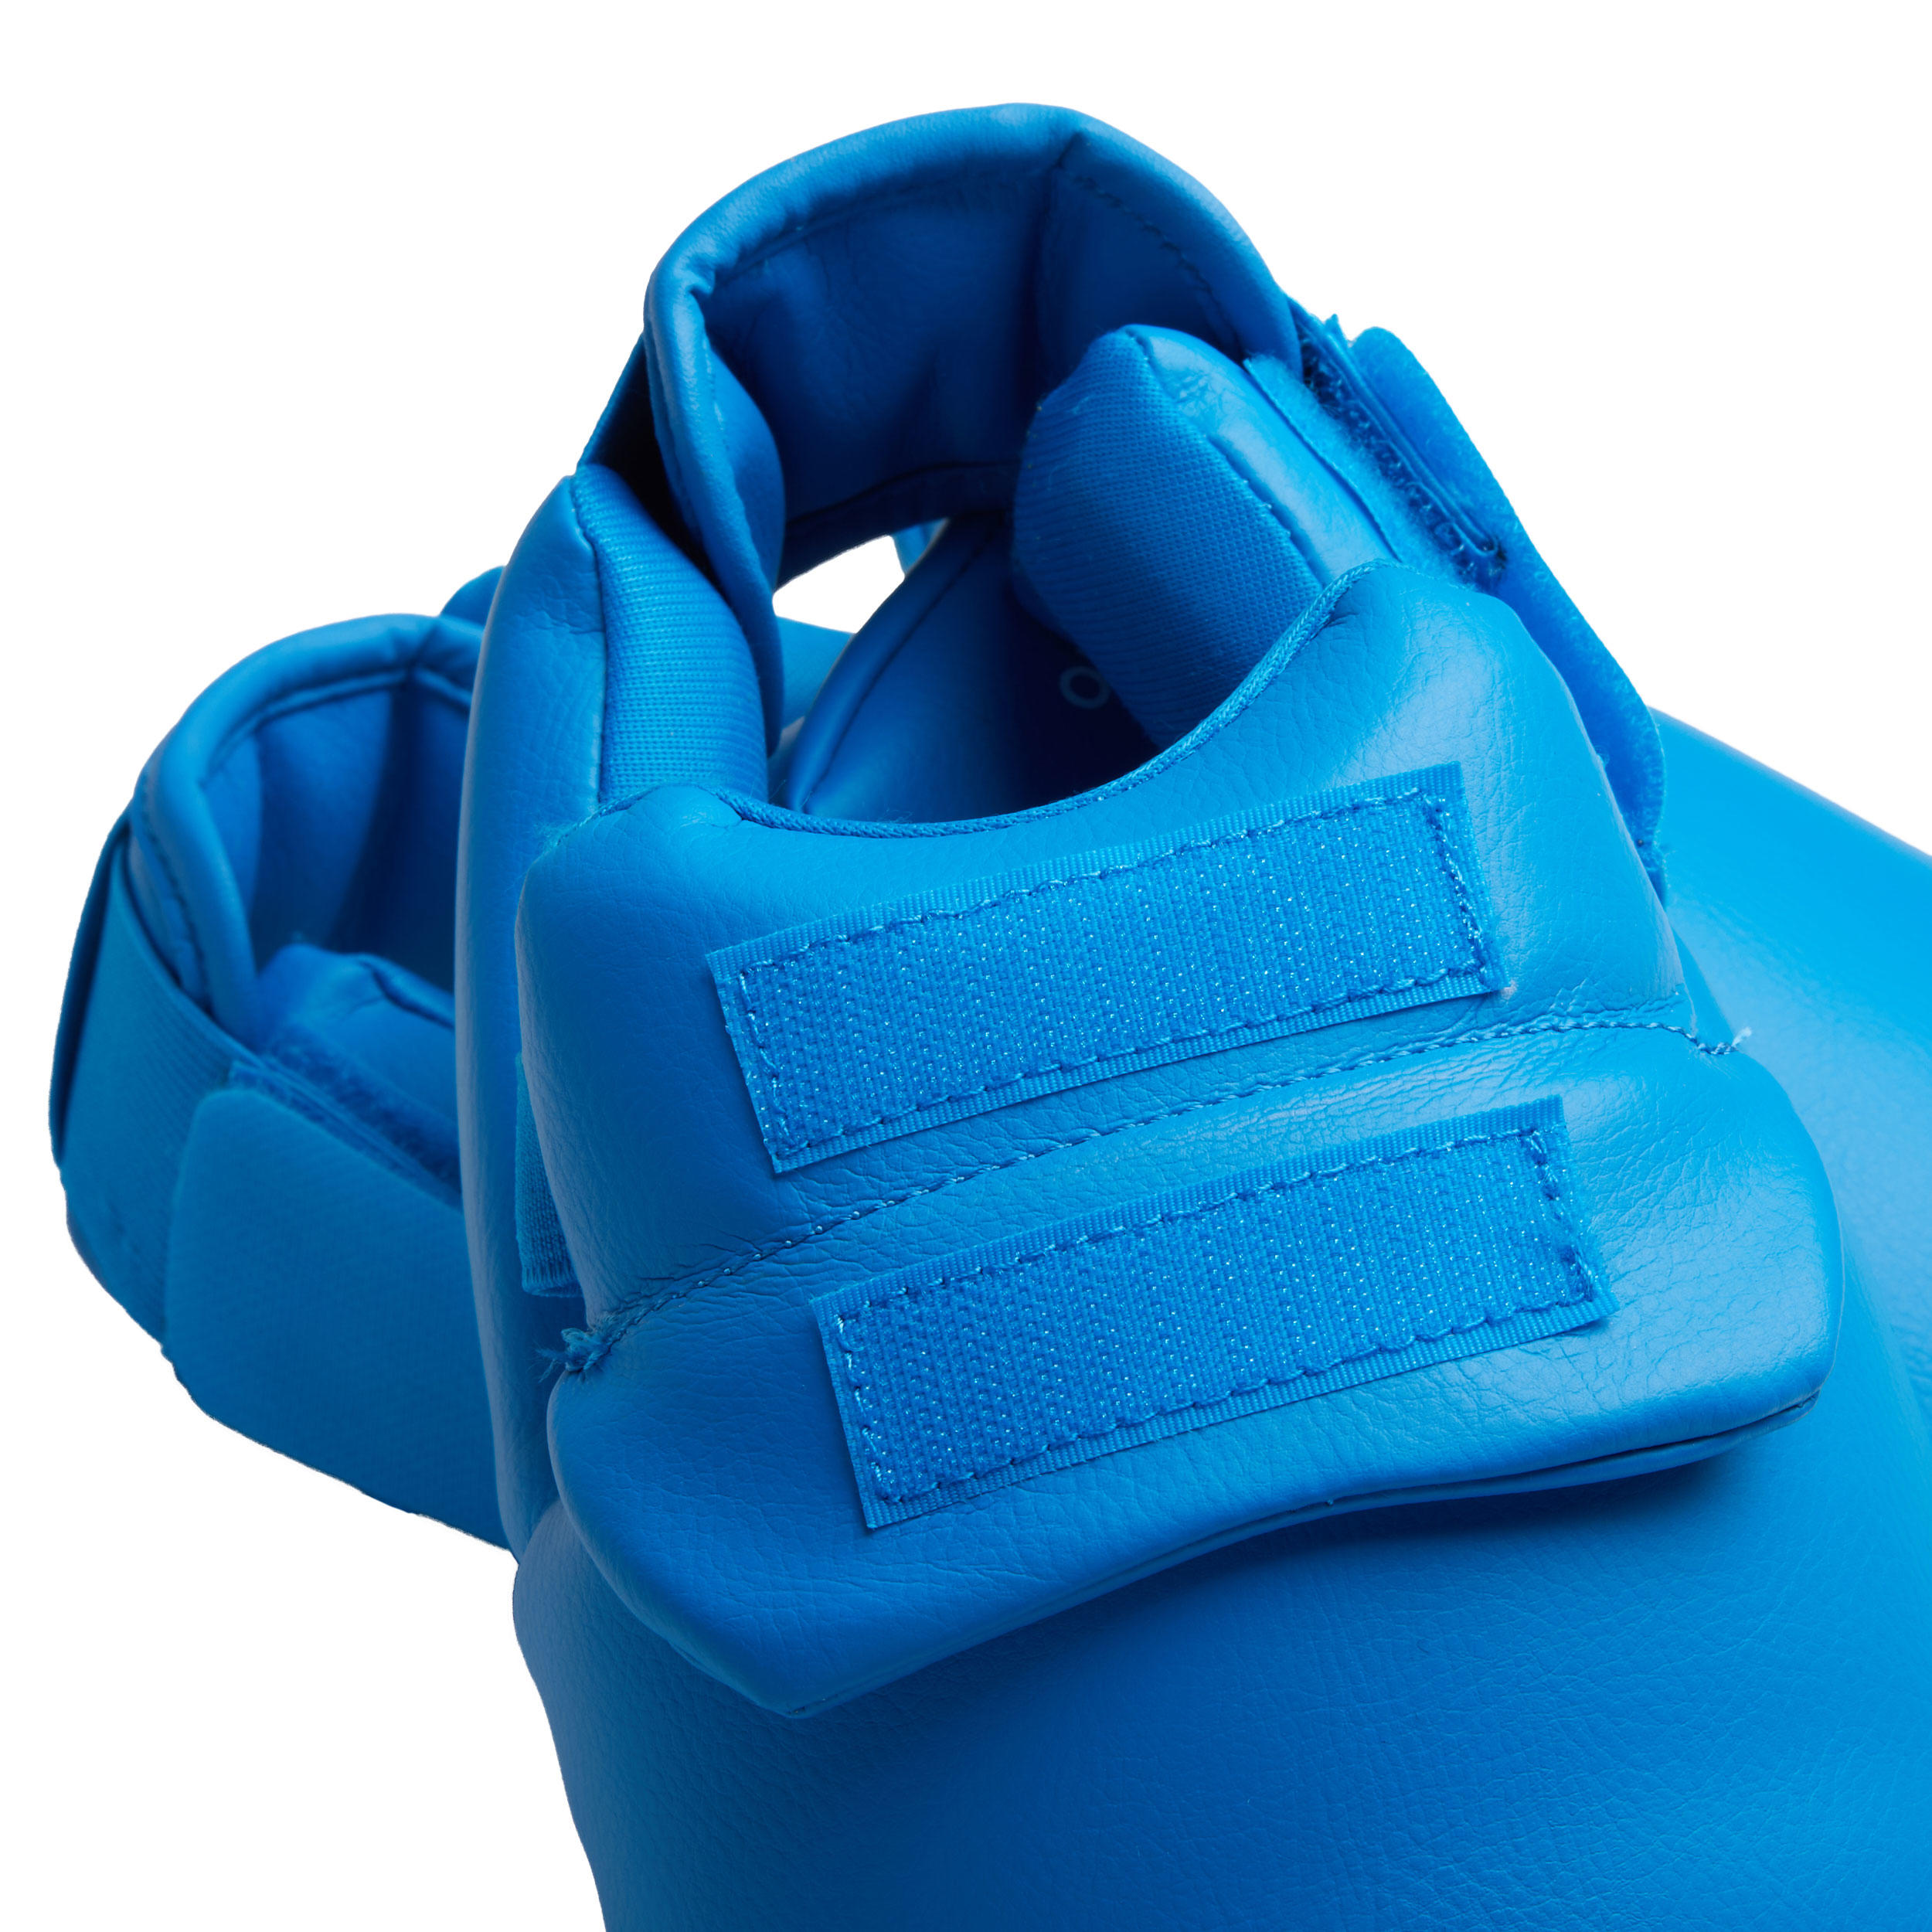 Karate Shin/Foot Guard 900 - Blue 9/12